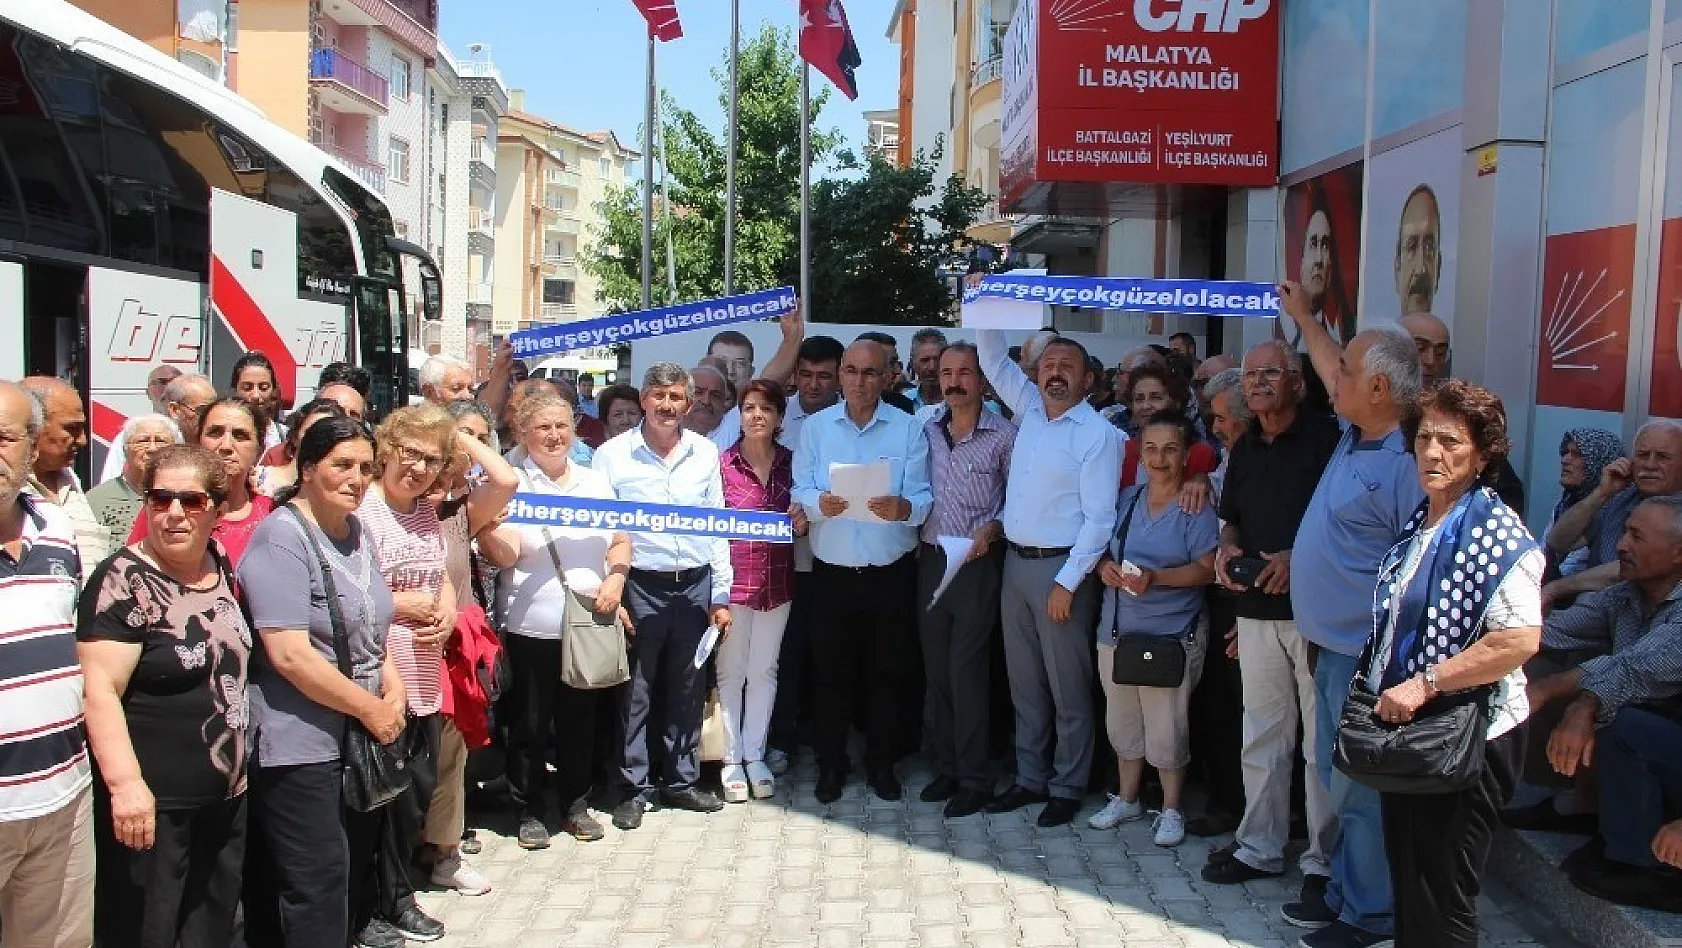 CHP İstanbul seçimleri için Malatya'dan otobüs kaldırdı 